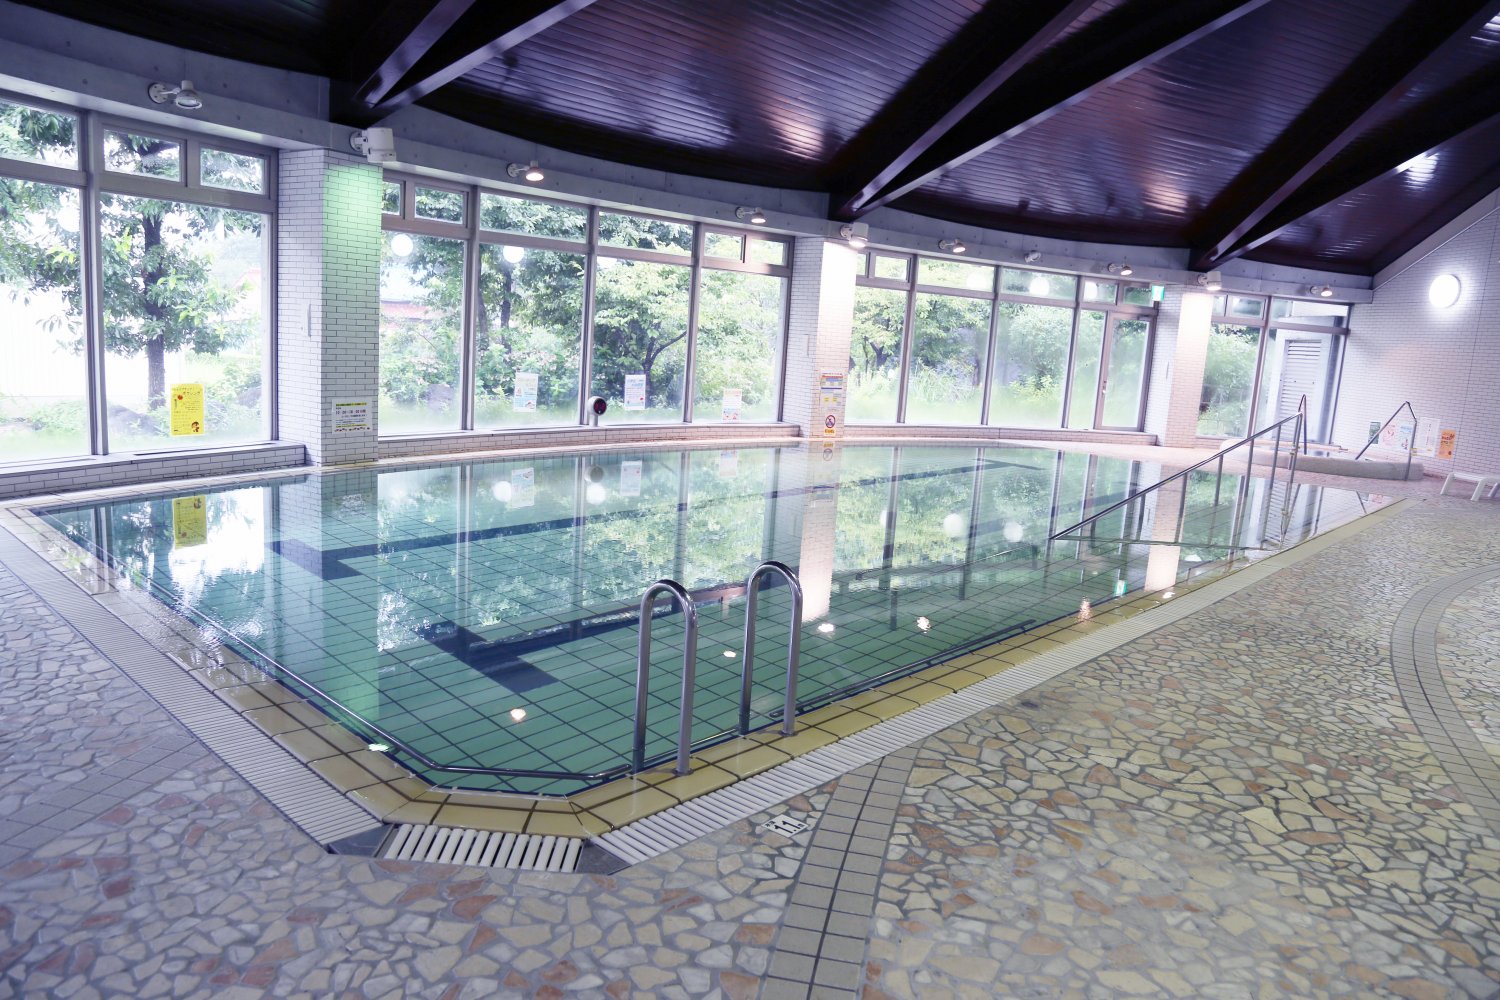 プログラムが開催されいていない運動浴プールでは自由にウォーキングなどができる。